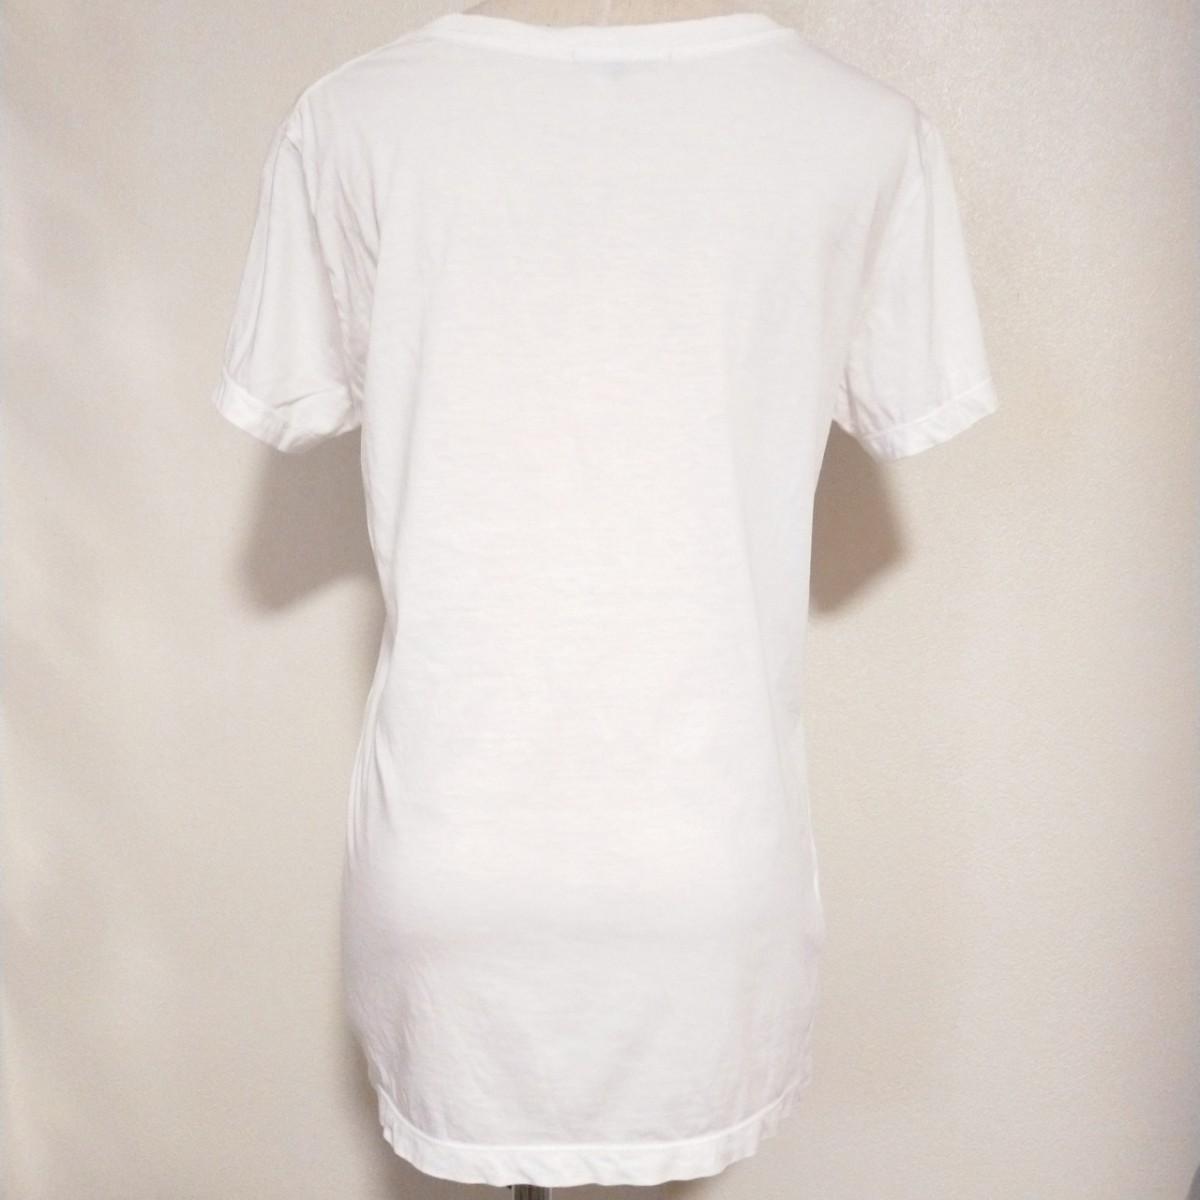 23区 半袖Tシャツ Mサイズ 白 コットン ロゴ 薄手 ストレッチ クルーネック オンワード トップス レディース 日本製 新品